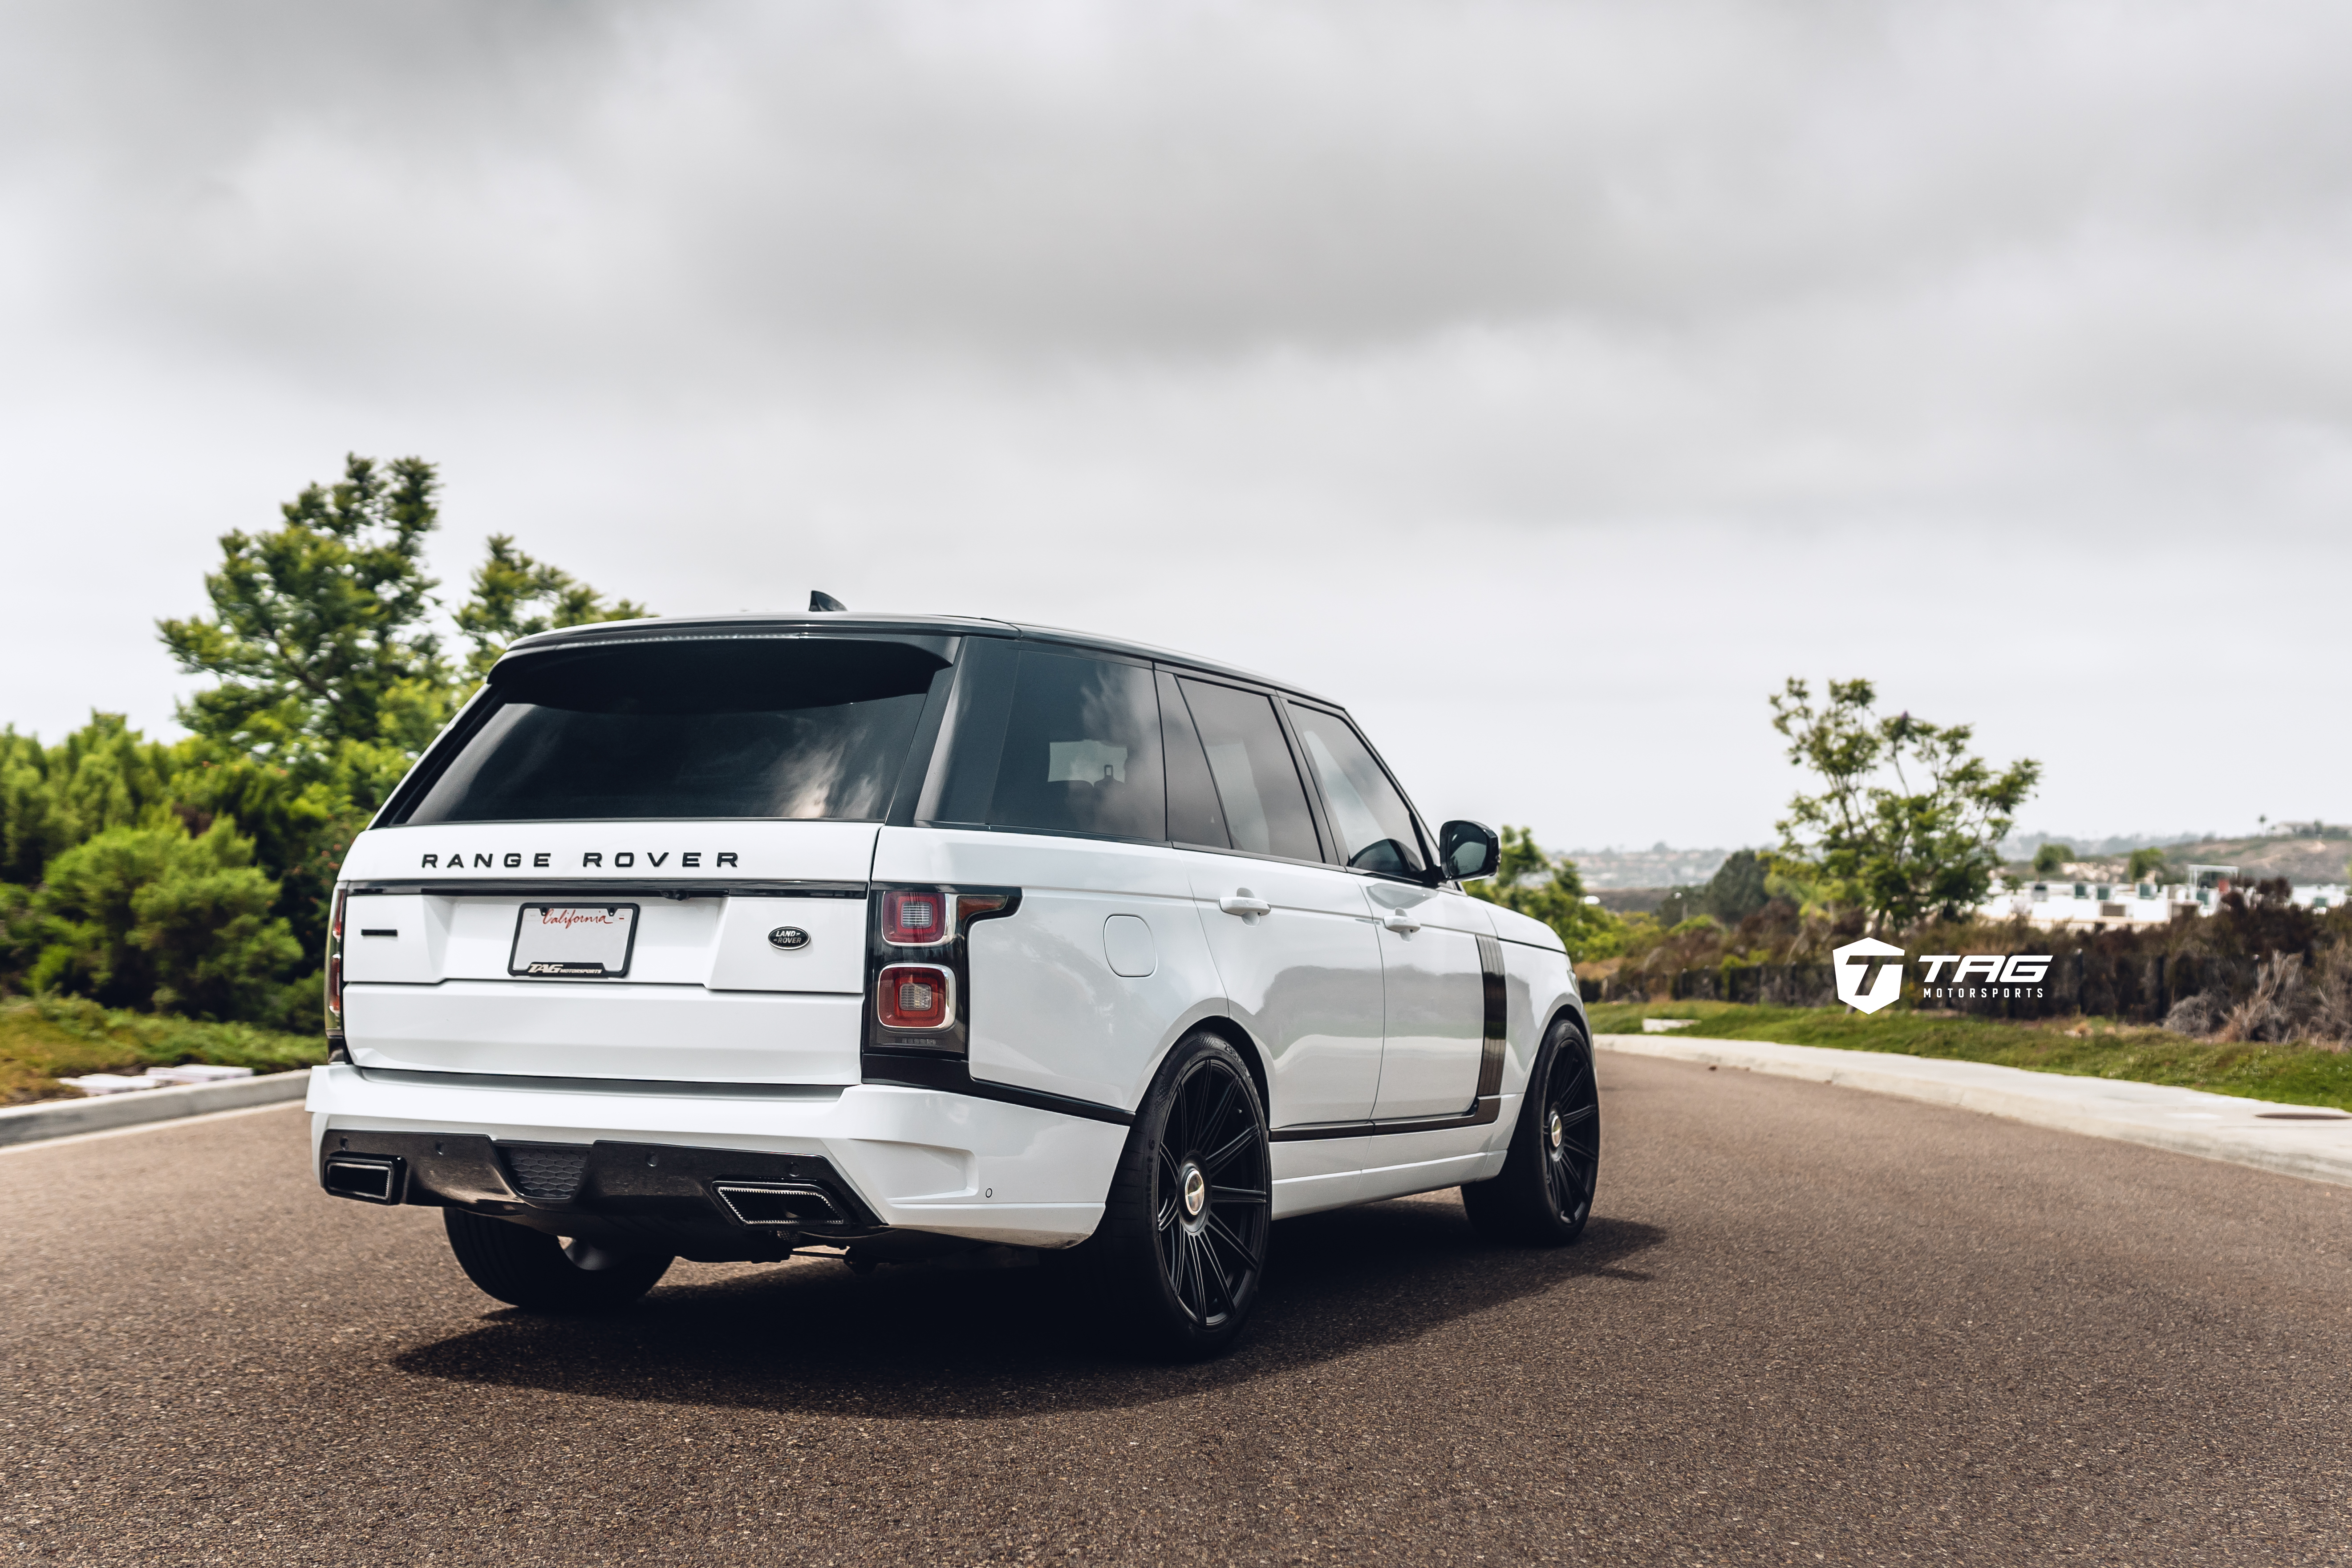 Tag Range Rover Full Size With Startech Aero Vossen Wheels Tag Motorsports Rennlist Porsche Discussion Forums